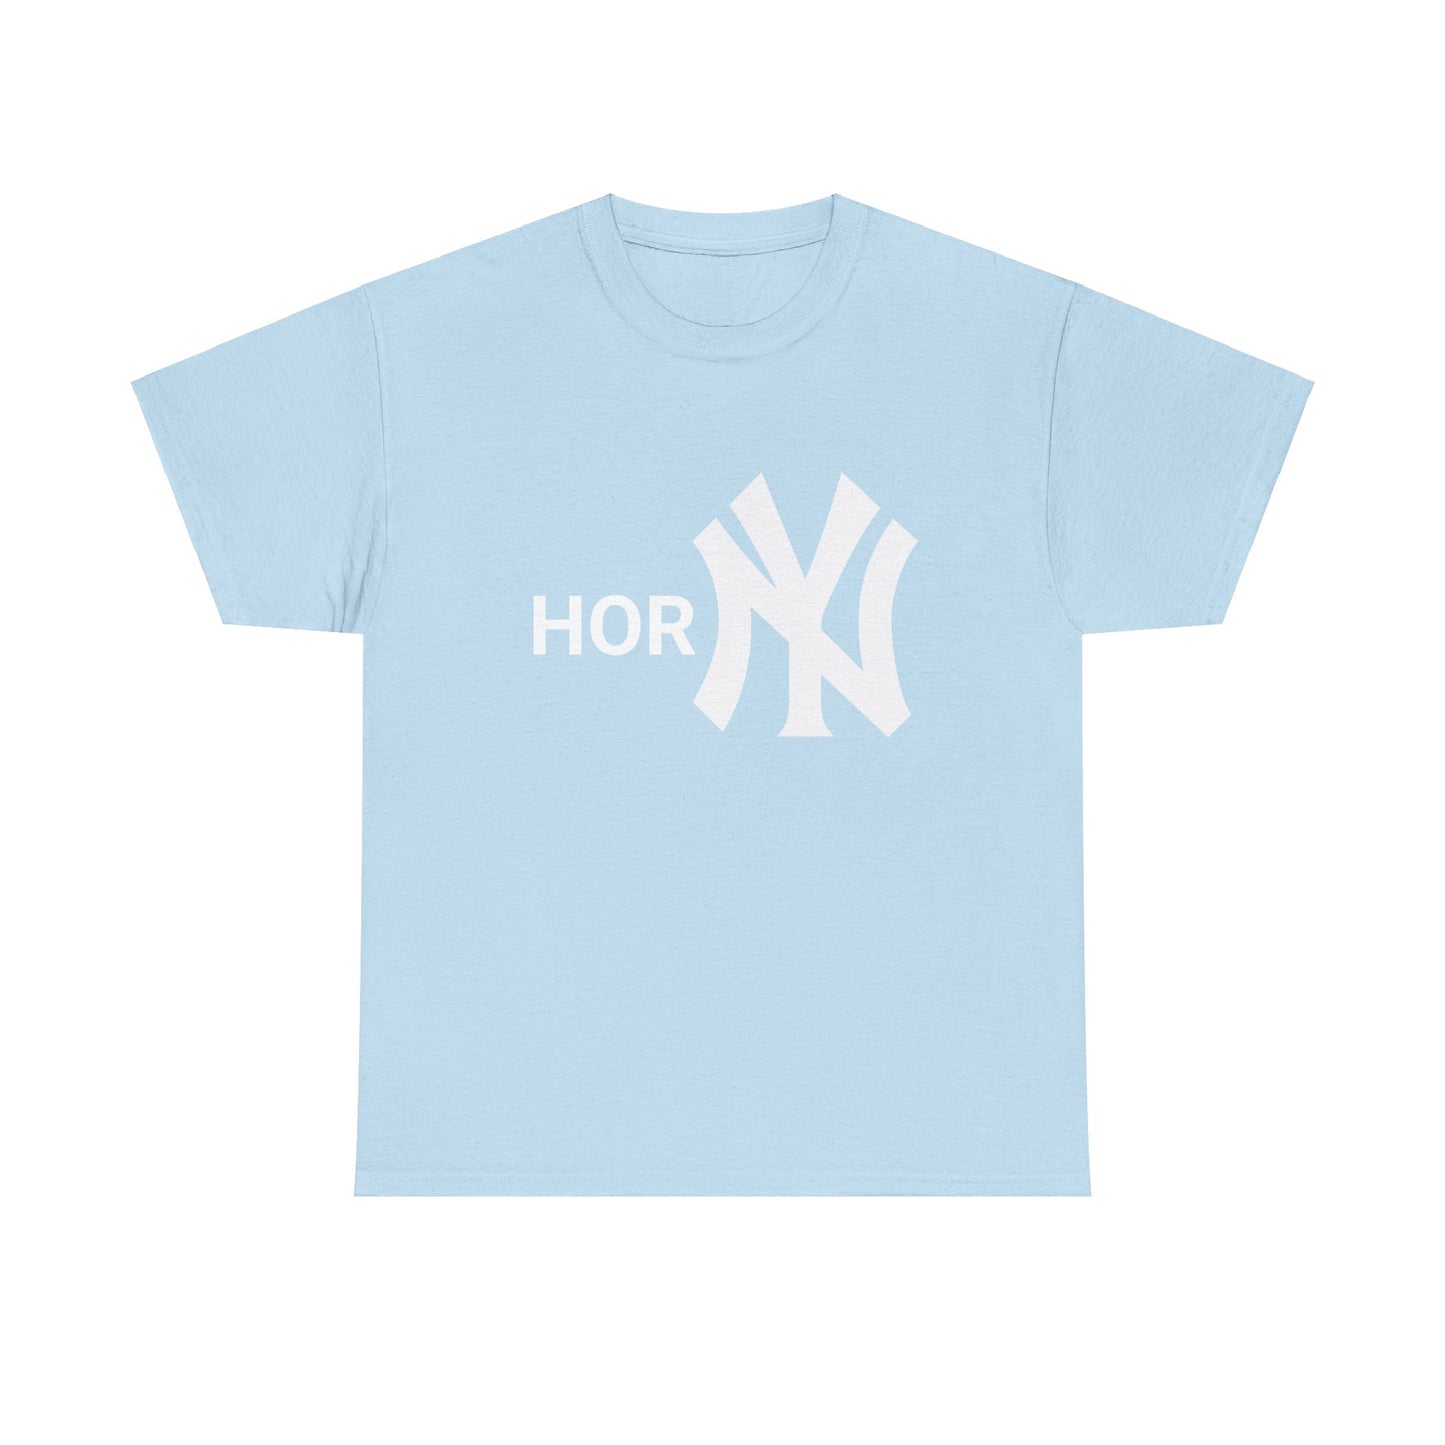 Entdecke unser provokatives T-Shirt mit dem Schriftzug "Horny" und dem ikonischen New York Yankees Logo. Ein Statement für selbstbewusste Fashionistas. Hochwertige Baumwolle für unschlagbaren Komfort. Hol dir jetzt dieses gewagte Statement-Piece! Stylish NY Horny T-Shirt as gift for friends anf fans.